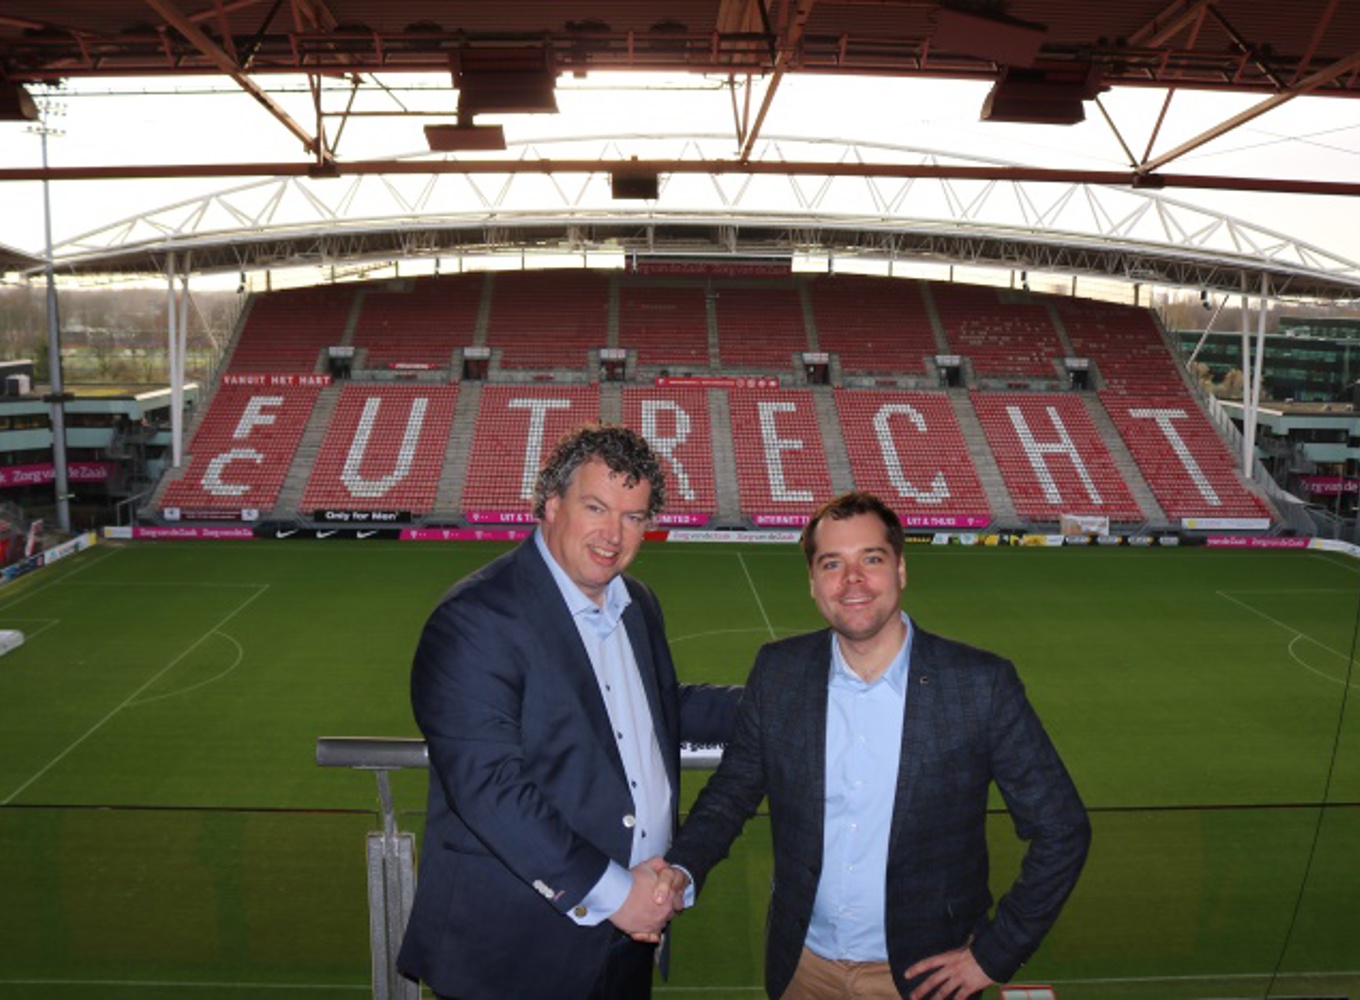 Erik Serré (partnermanager Buckaroo) en Folker de Pundert (directeur Ormer ICT en Tymes4) in het FC Utrecht stadion